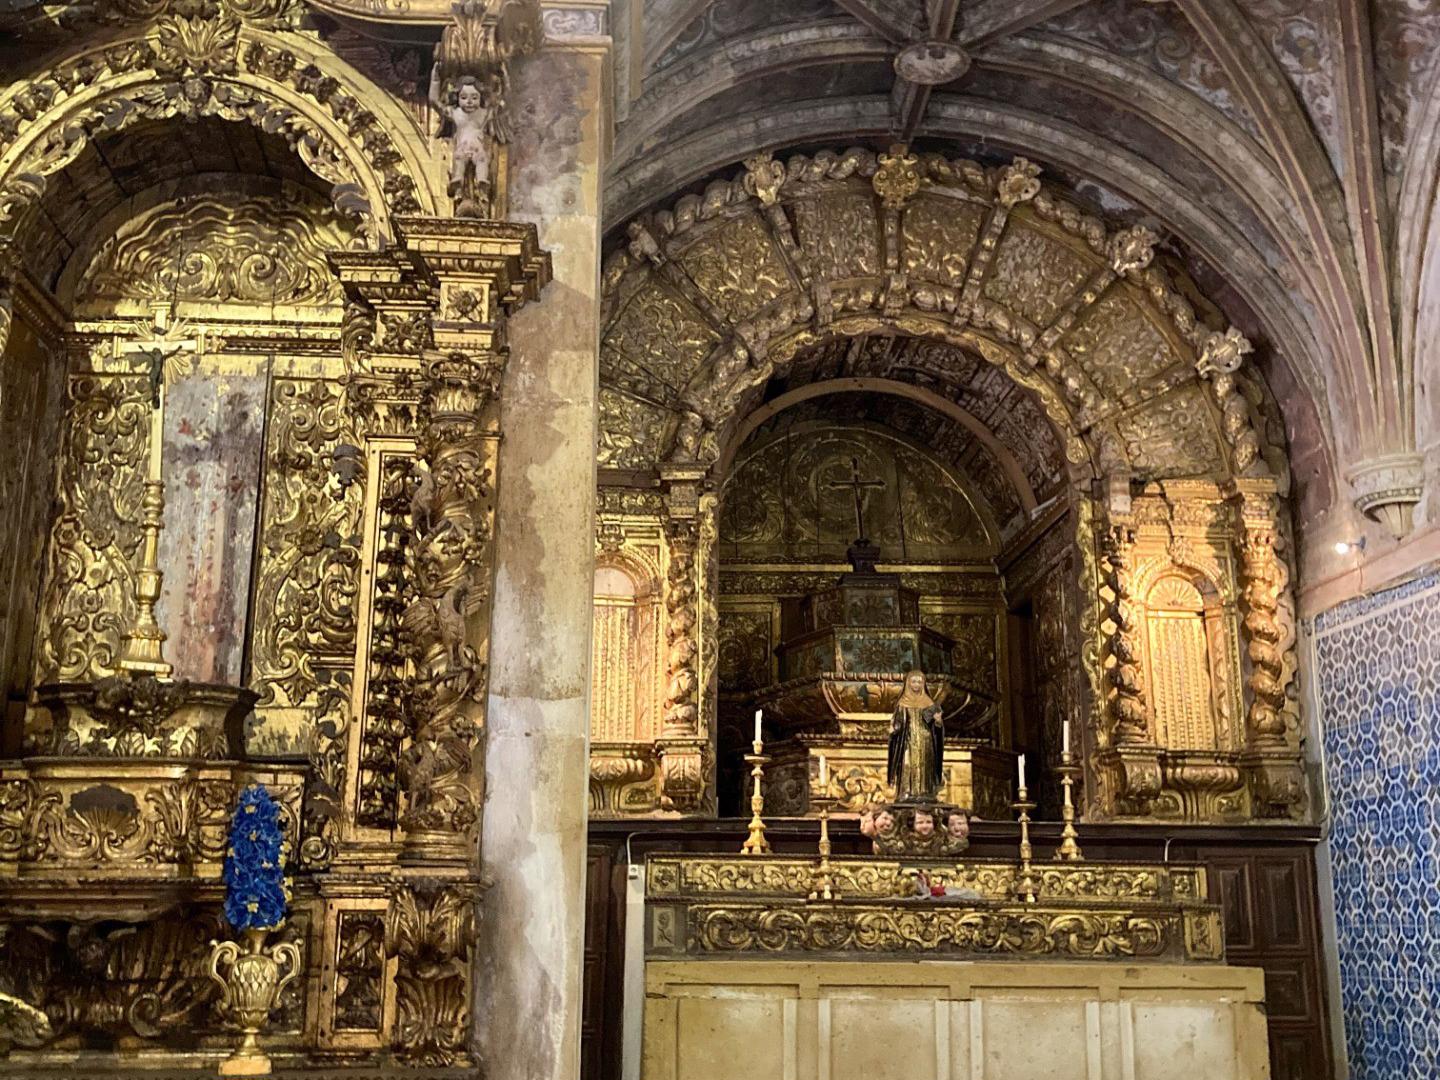 Altar - Capela dedicada a Santa Iria, padroeira da cidade. Foi mandada construir no século XV, tendo sofrido uma remodelação e ampliação no século XVI, que lhe acrescentou elementos renascentistas. 